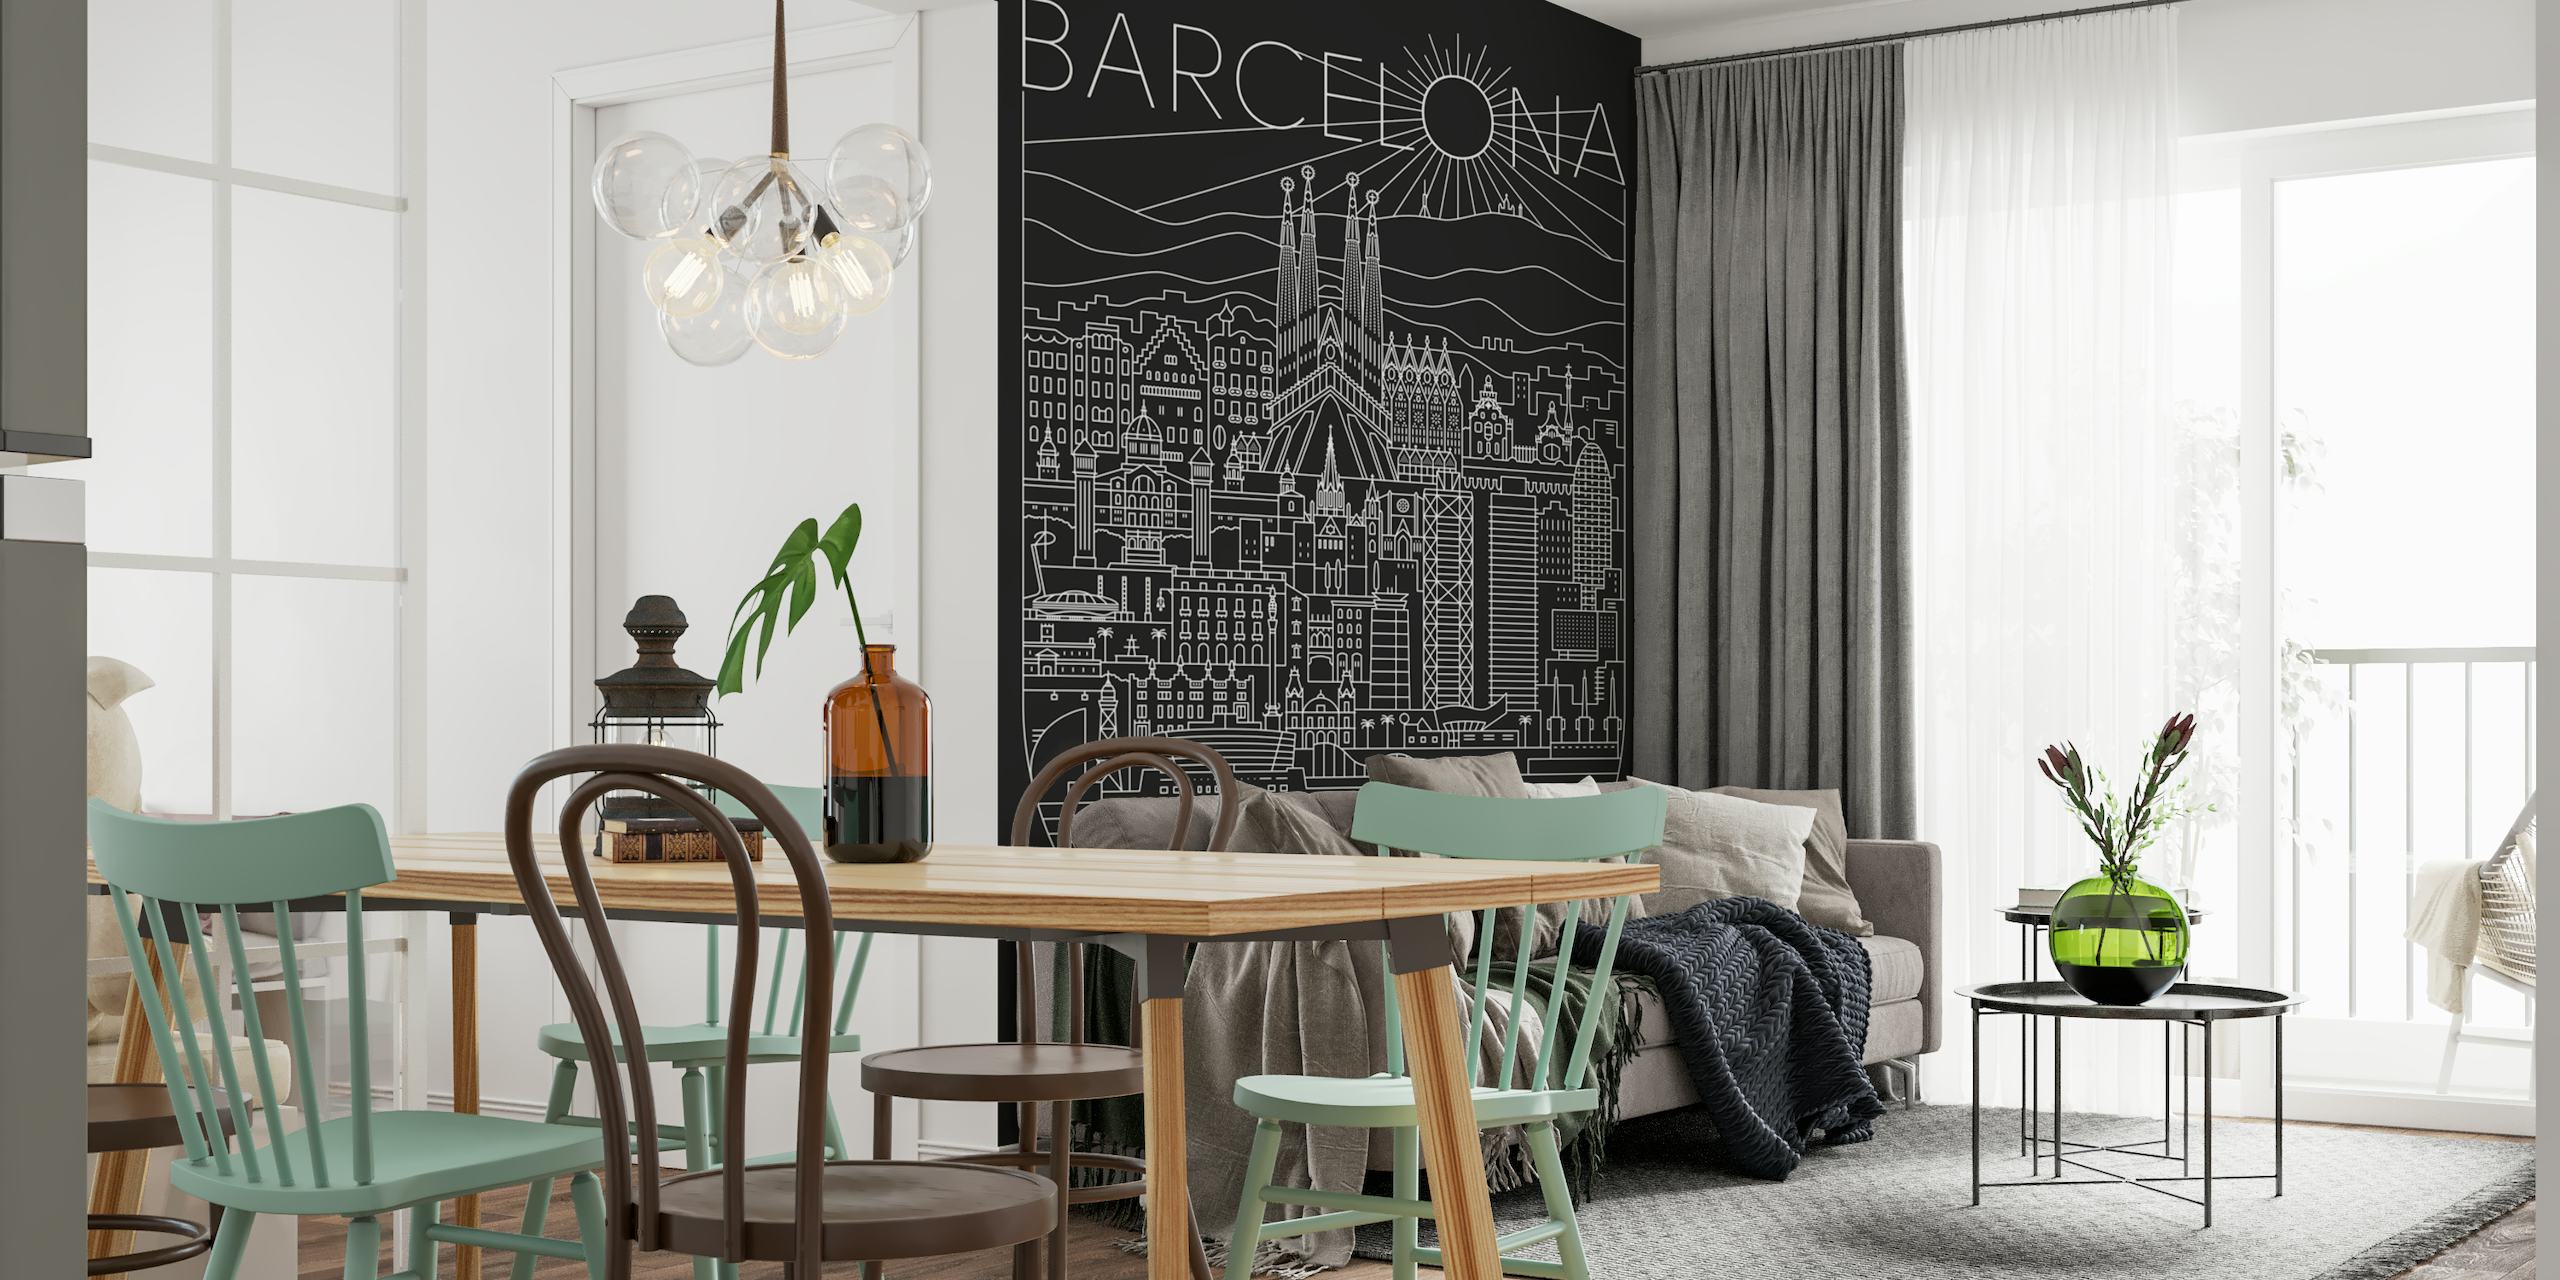 Umjetnička zidna slika koja prikazuje gradski krajolik Barcelone s istaknutim detaljima kao što je Sagrada Familia